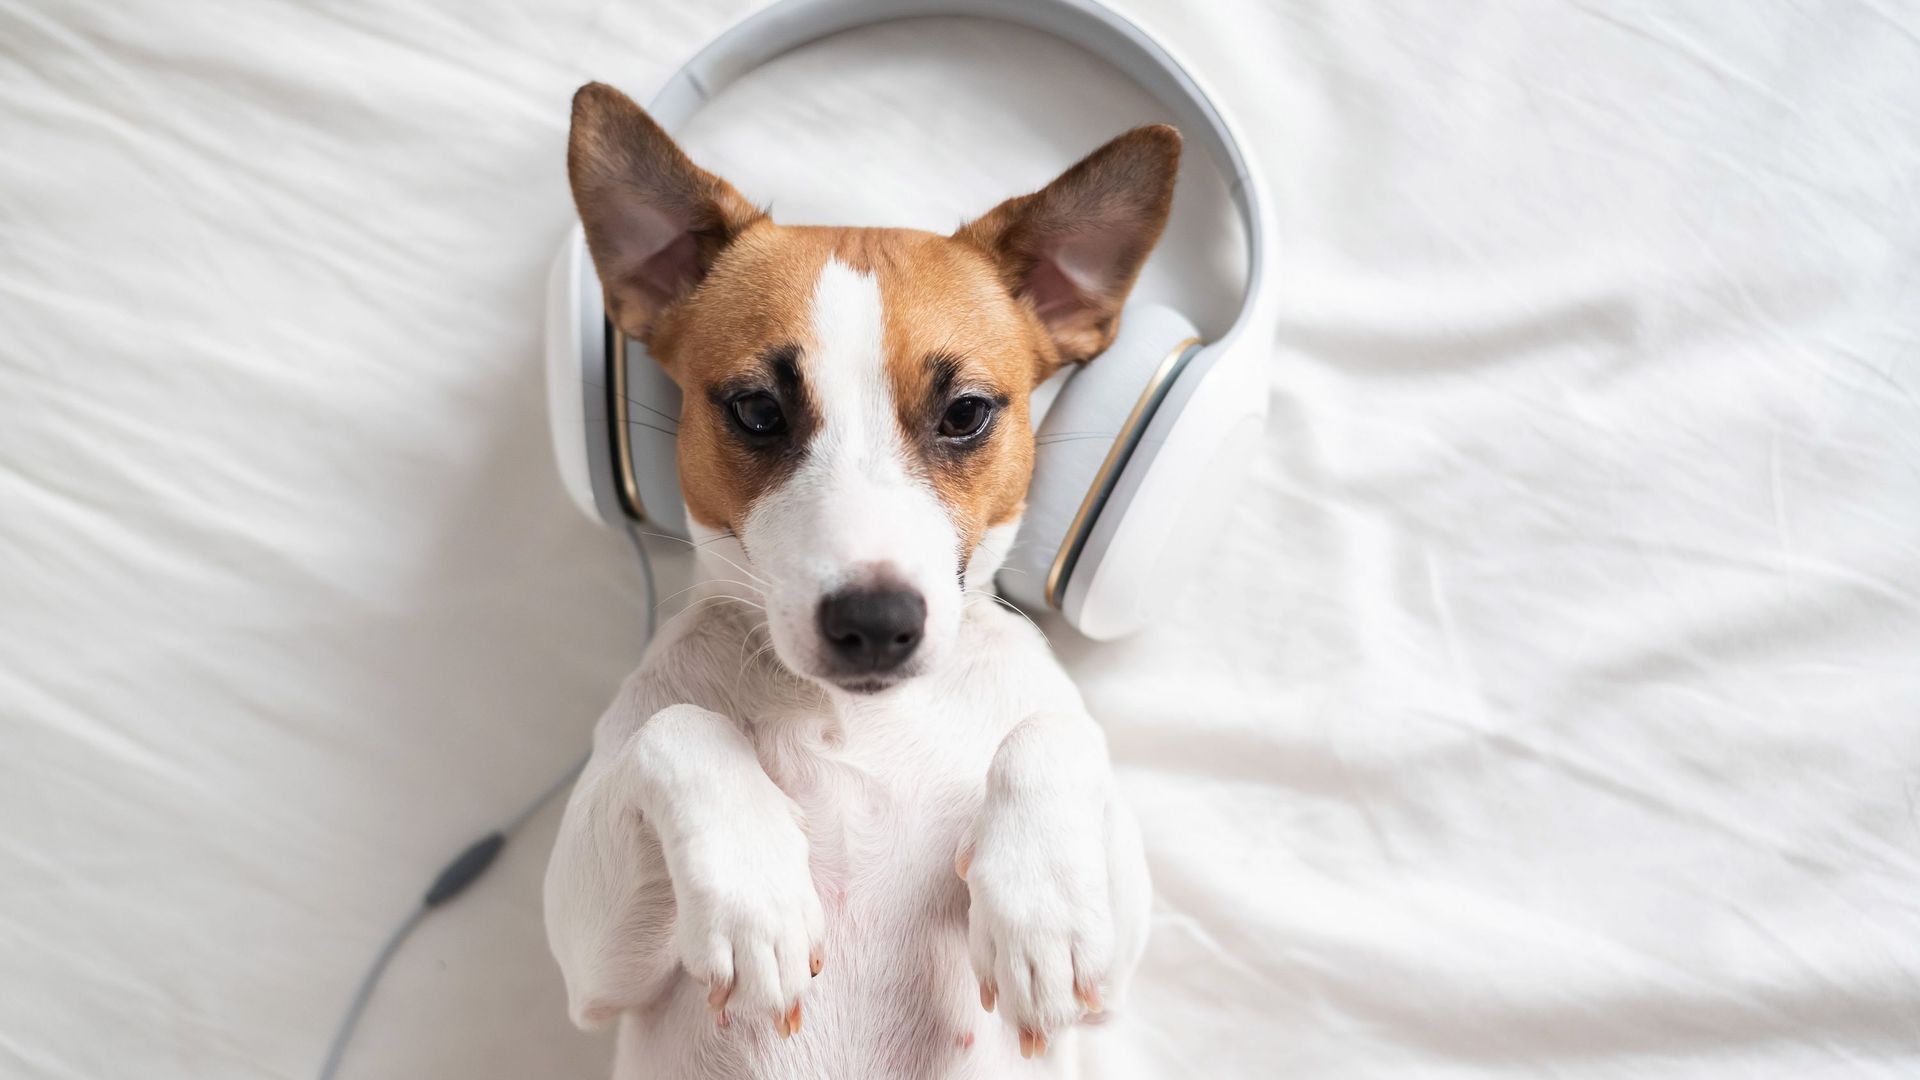 Selon une étude, la musique classique limite le stress d'un chien